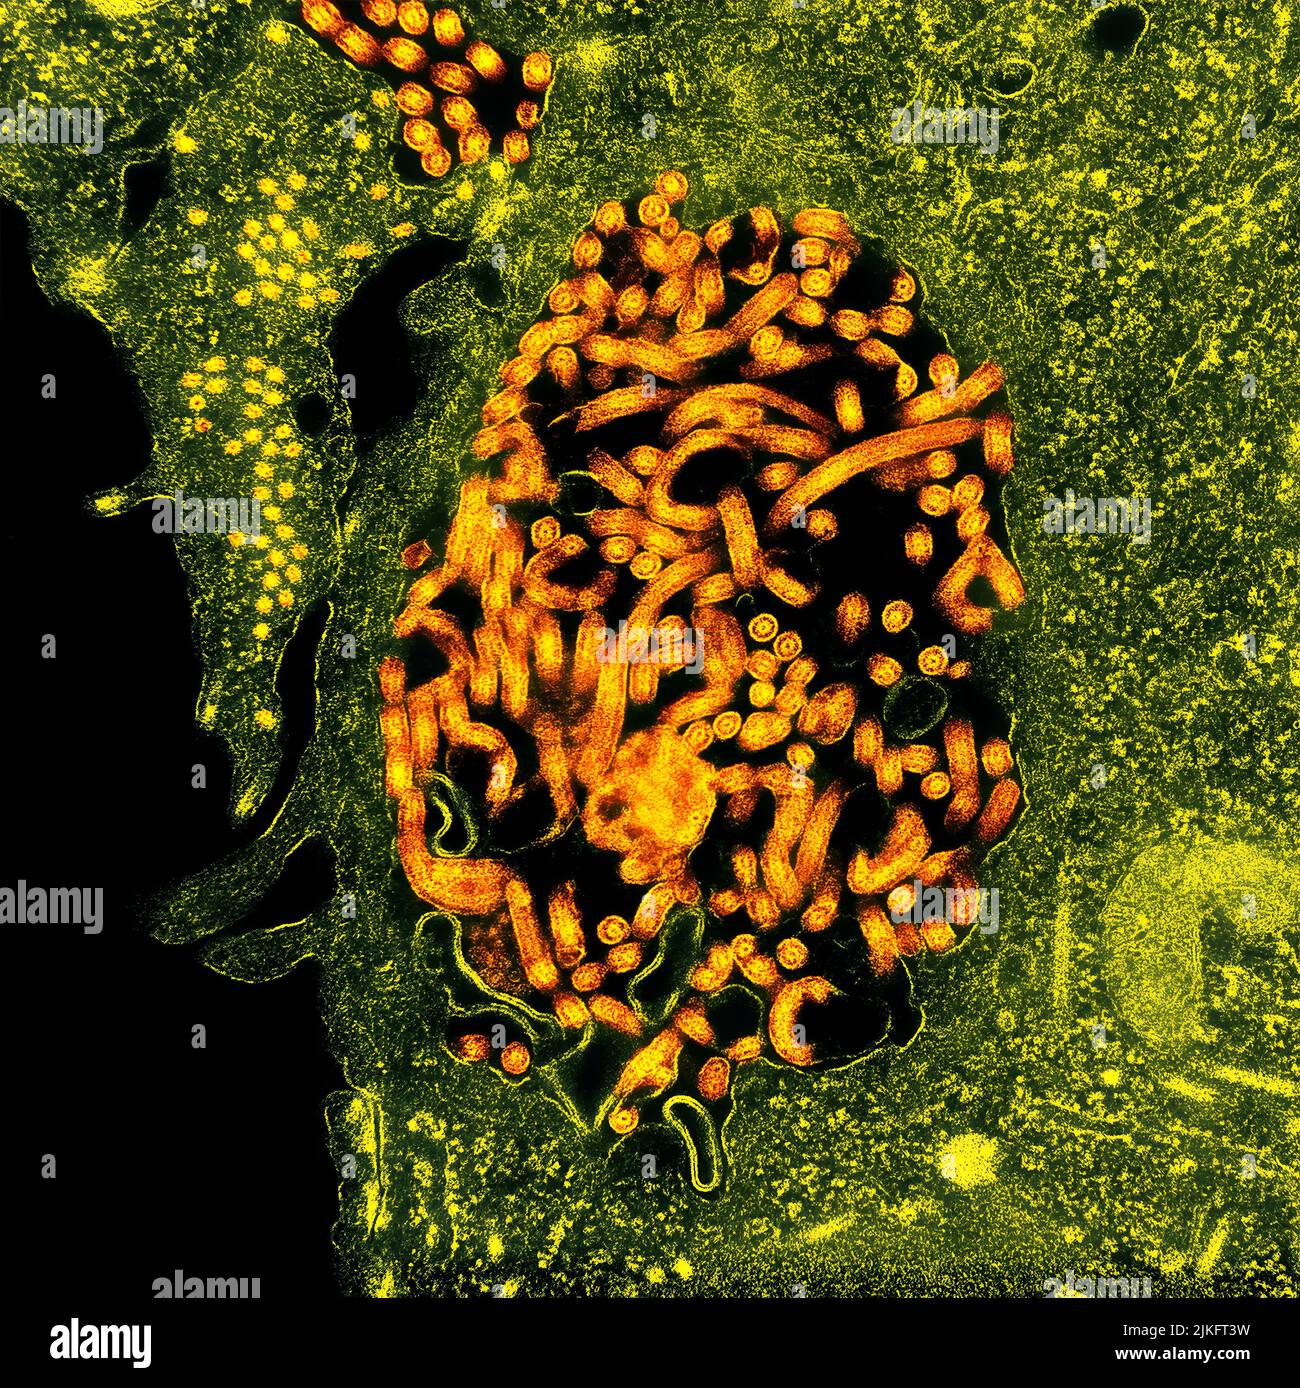 Micrografía electrónica de transmisión de nucleocápsidos del virus del Ébola (pequeños círculos naranjas) y partículas víricas (formas filamentosas naranjas más grandes) en células renales de monos verdes africanos infectadas. Imagen enfocada en el NIAID Integrated Research Center en Fort Detrick, Maryland. Foto de stock